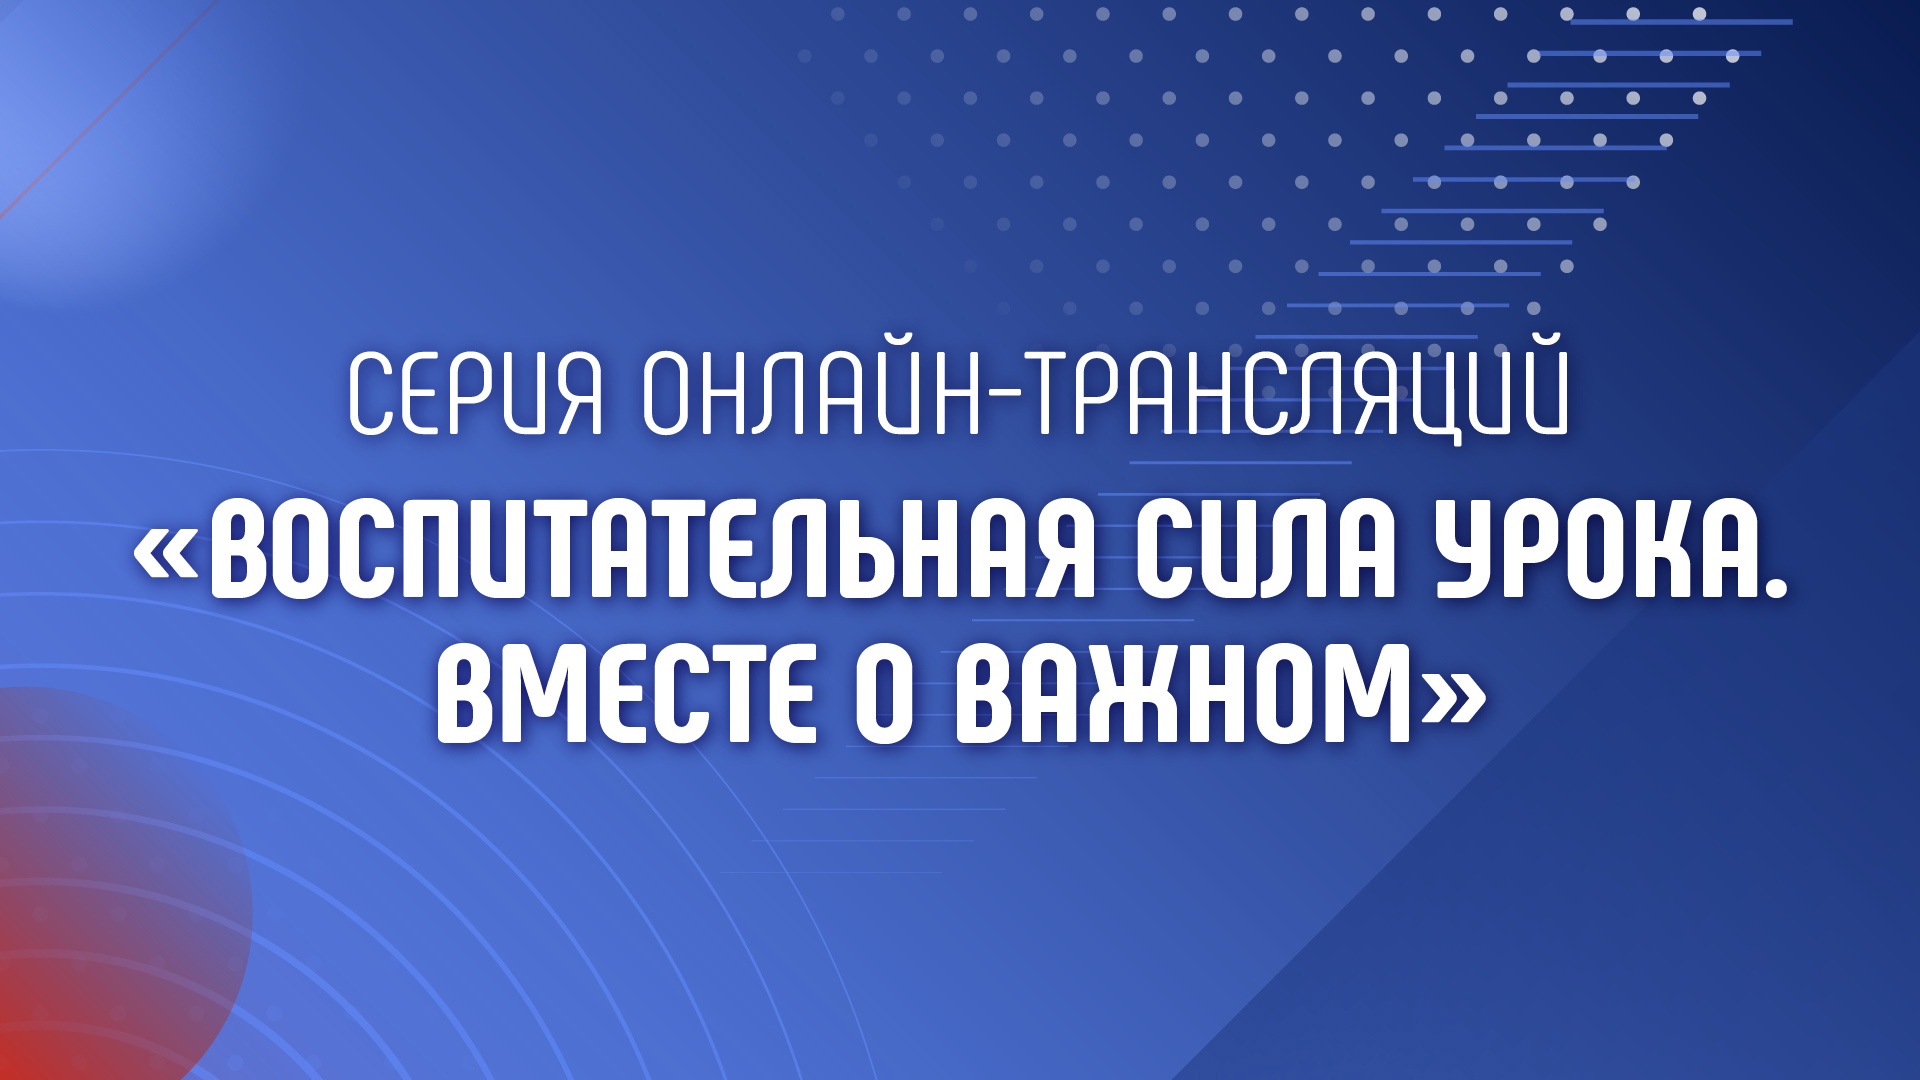 Академия Минпросвещения России продолжает обсуждение технологии межпредметного сотрудничества в рамках тем «Разговоров о важном».